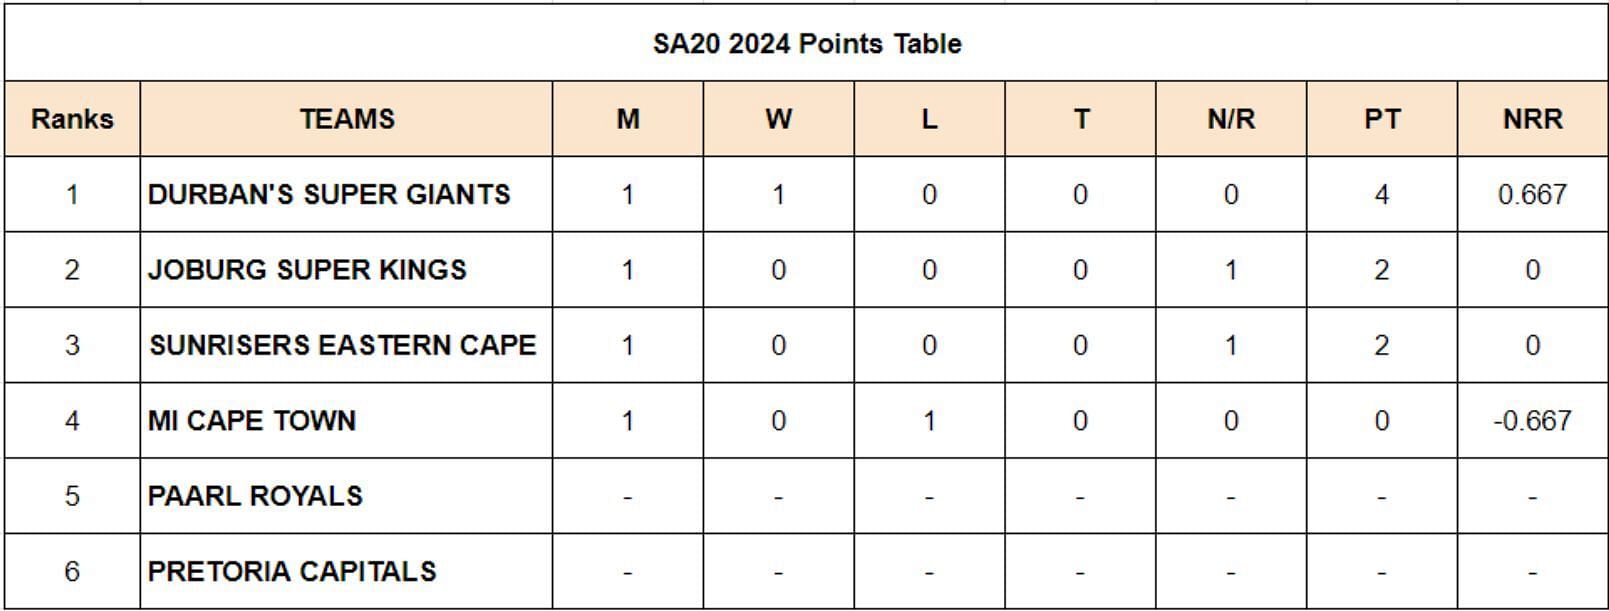 SA20 2024 Points Table